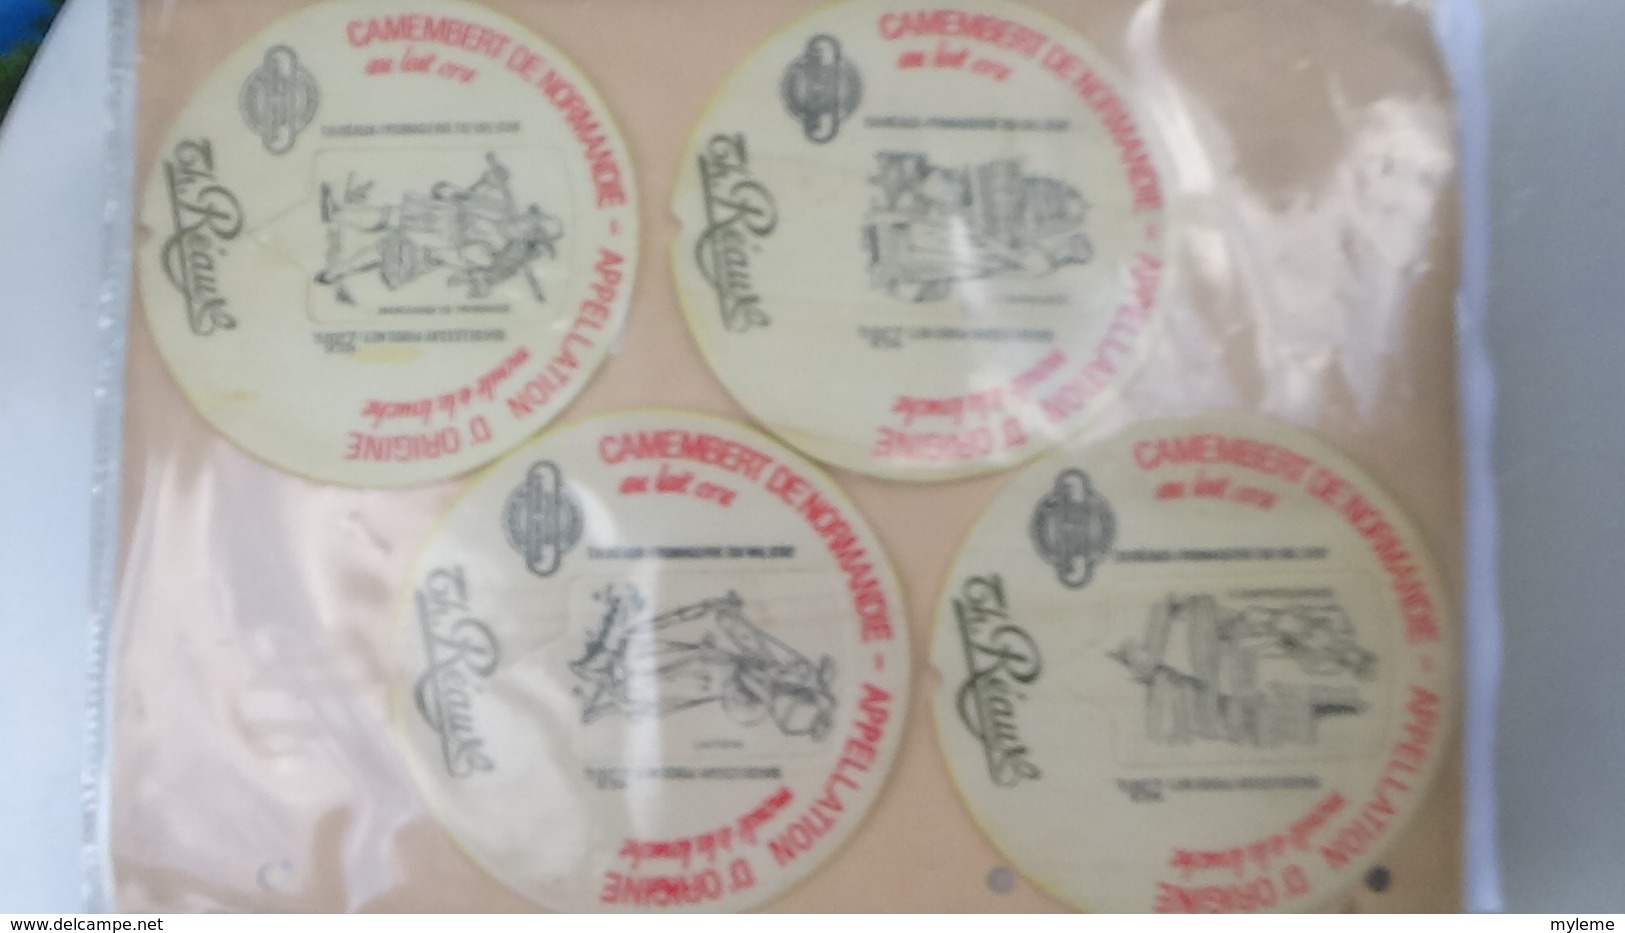 Grosse collection de couvercles et étiquettes (77 dans ce classeur) de fromages Français.4/10 Voir commentaires !!!